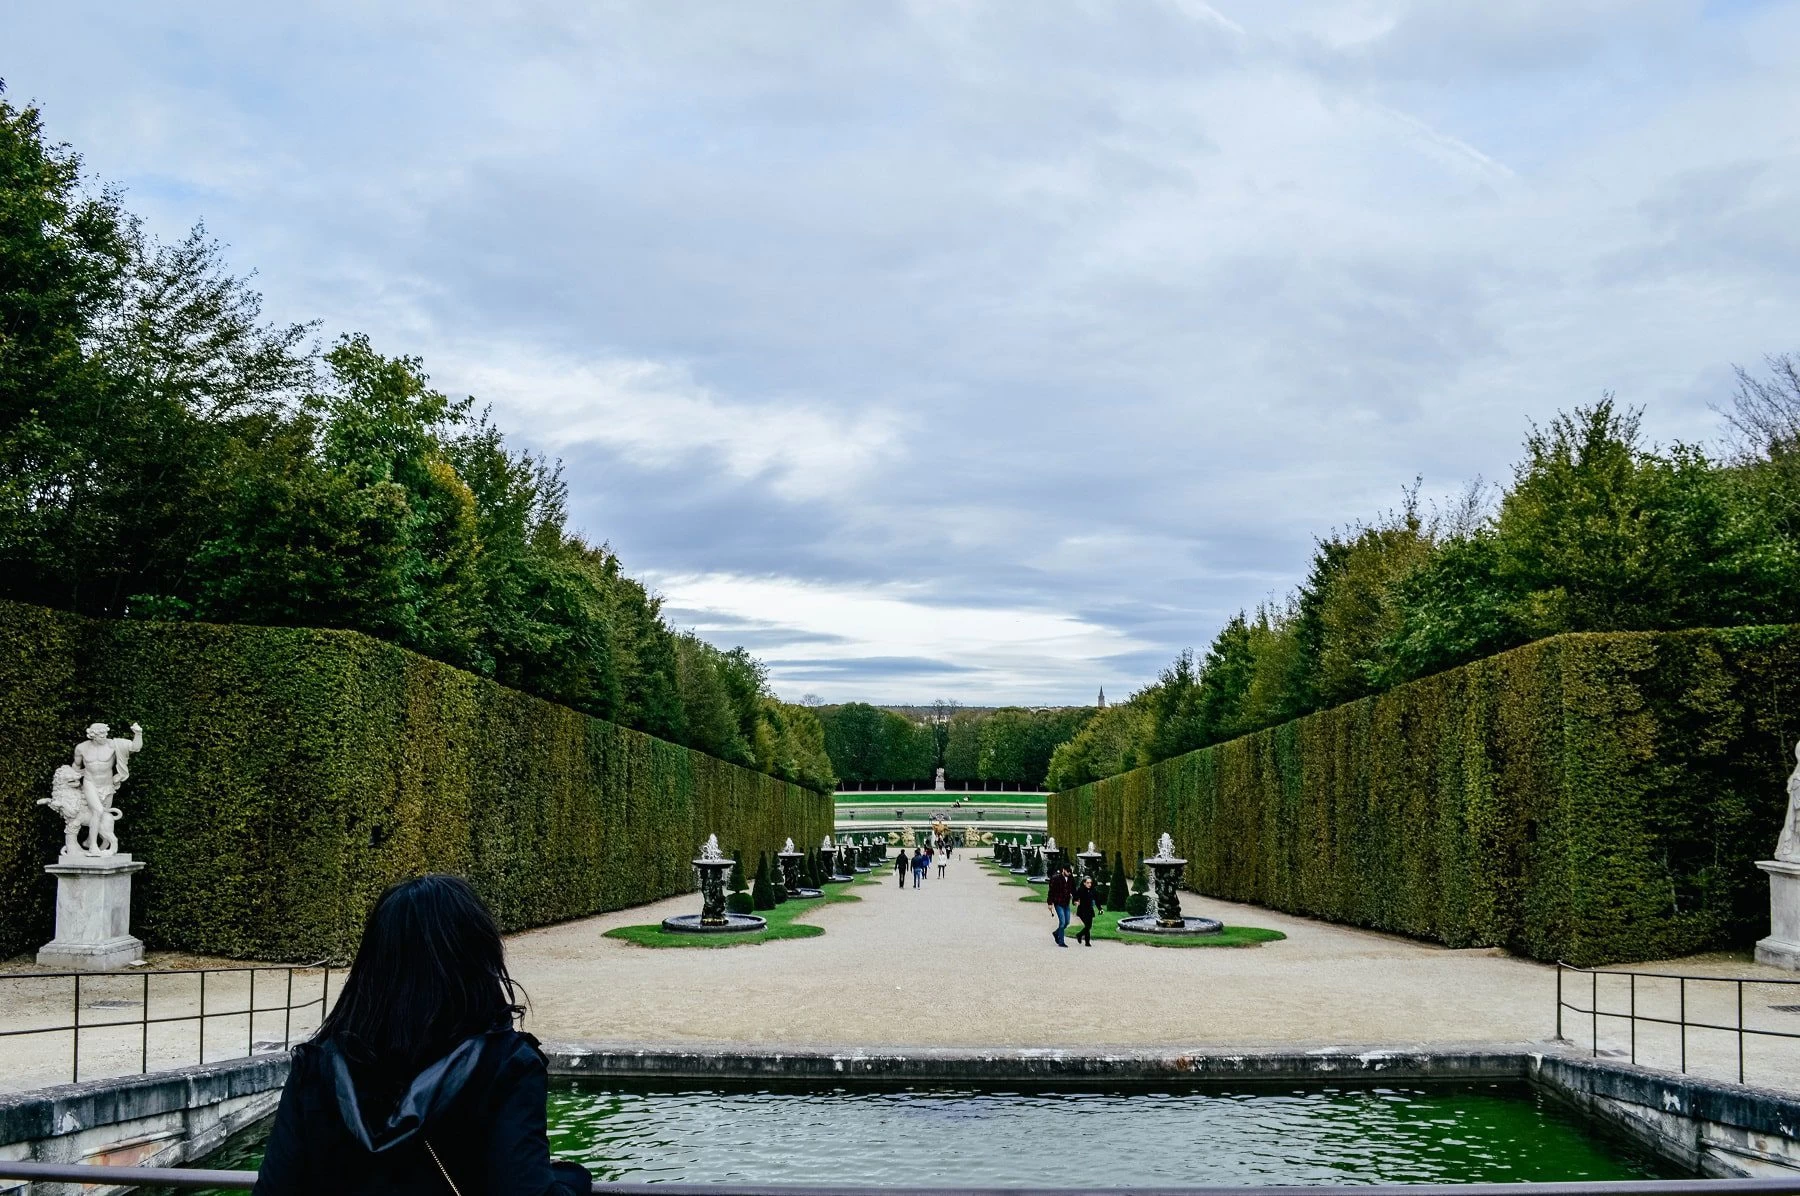 The garden of Versailles